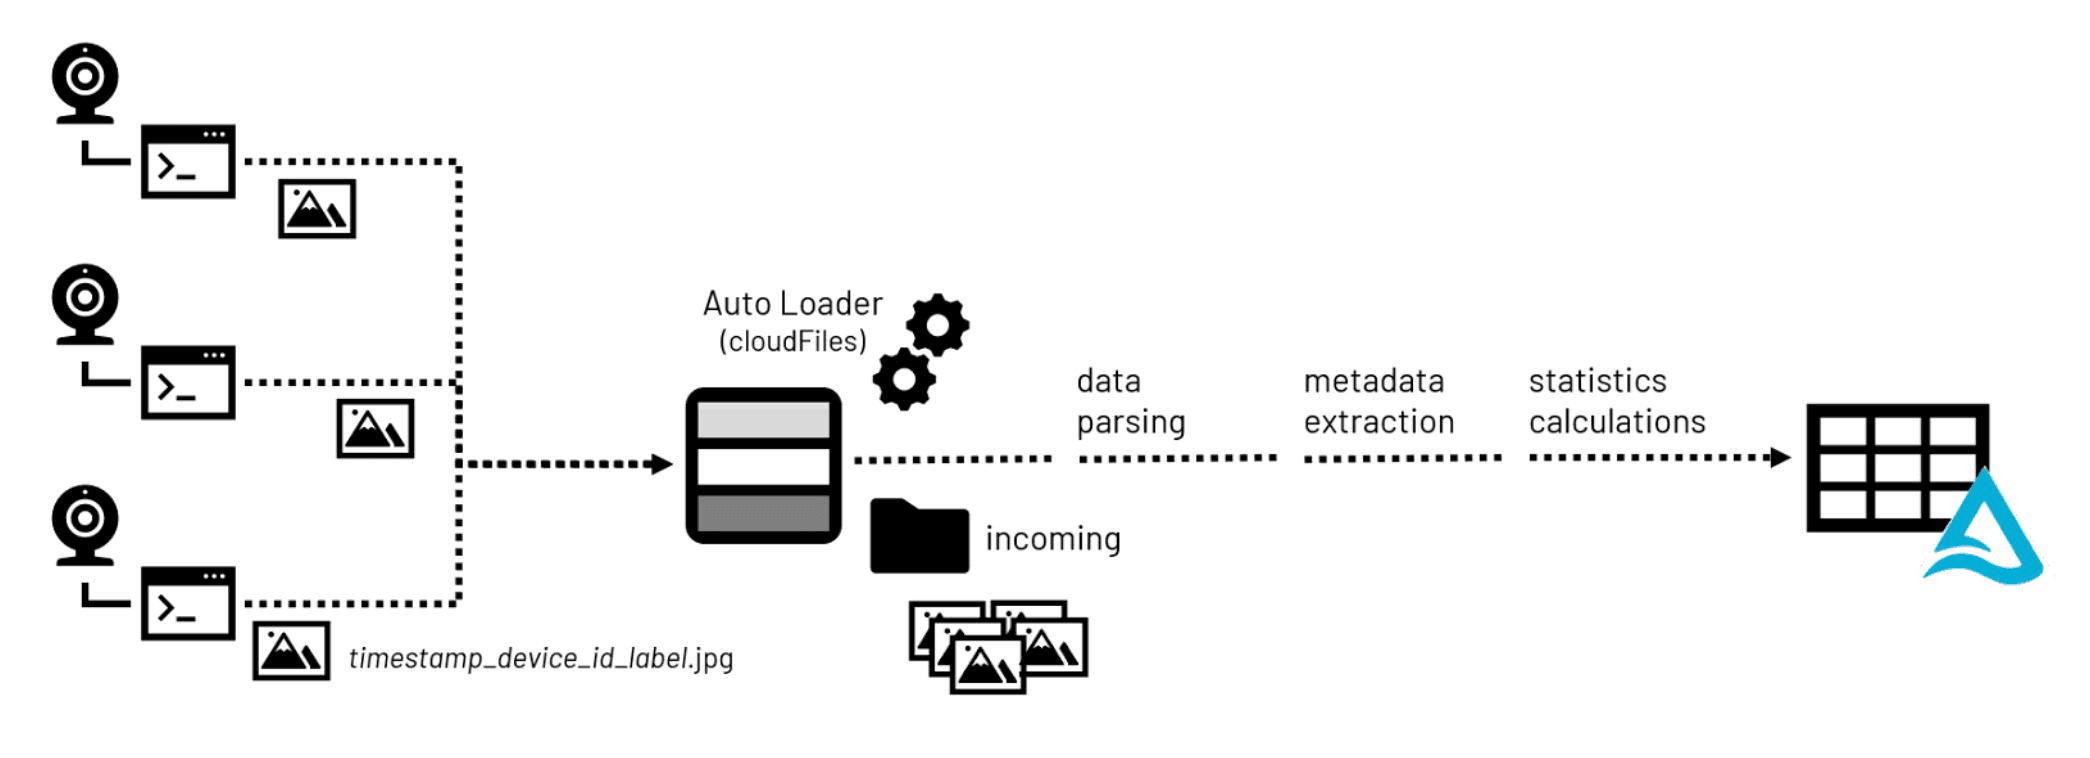 典型的计算机图像数据处理工作流传入的图像文件。